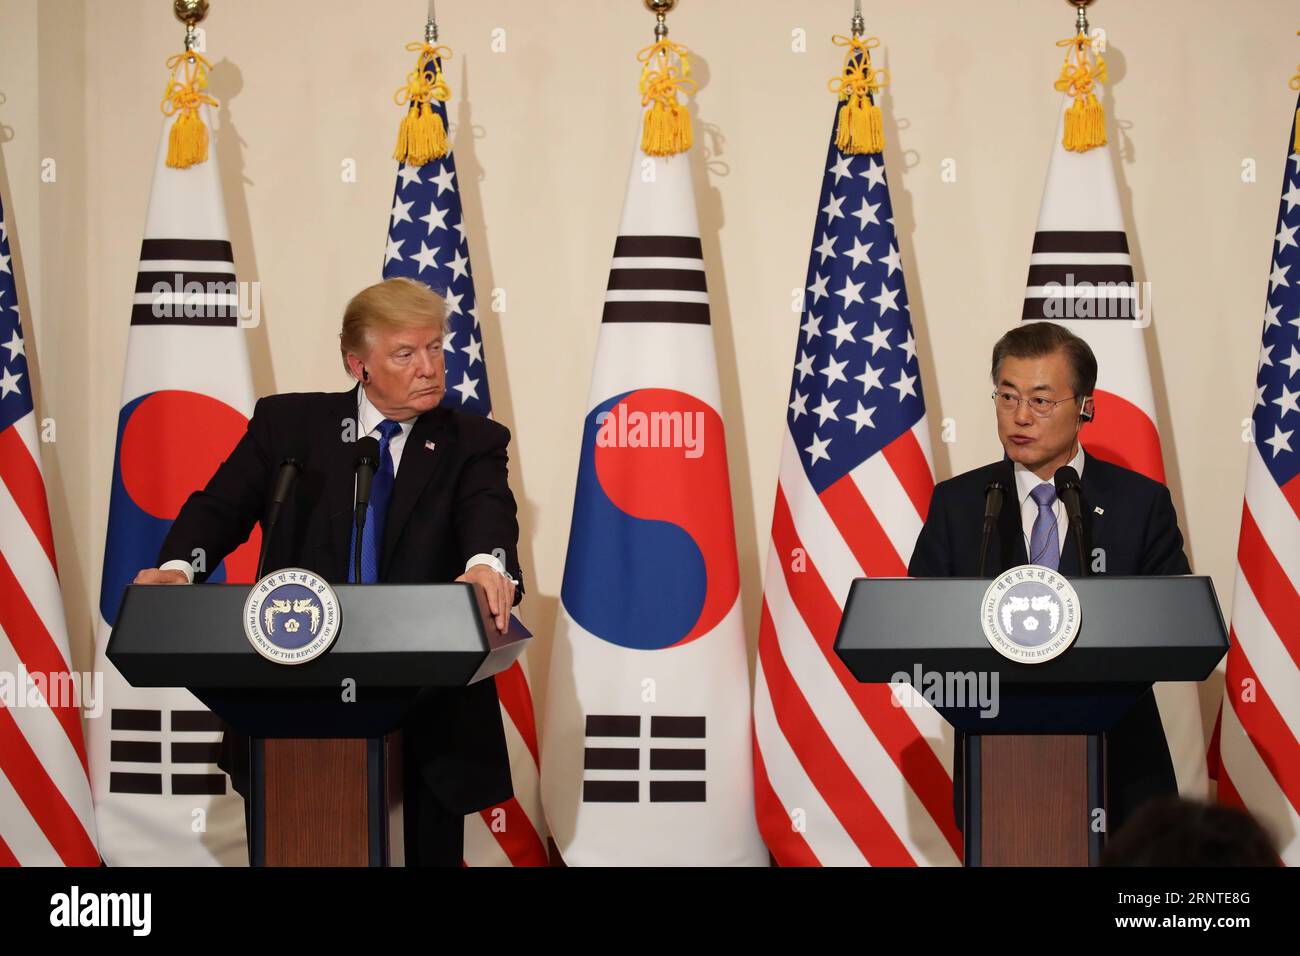 (171108) -- SÉOUL, le 8 novembre 2017 -- le président américain Donald Trump (à gauche) et le président sud-coréen Moon Jae-in assistent à une conférence de presse à la résidence présidentielle à Séoul, en Corée du Sud, le 7 novembre 2017. Donald Trump et Moon Jae-in ont convenu mardi de résoudre pacifiquement les problèmes dans la péninsule coréenne et de faire avancer rapidement les négociations pour un accord de libre-échange équitable entre les deux pays. (YY) CORÉE DU SUD-SÉOUL-ÉTATS-UNIS PRÉSIDENT-PRESSE CONFÉRENCE POOL PUBLICATIONXNOTXINXCHN Banque D'Images